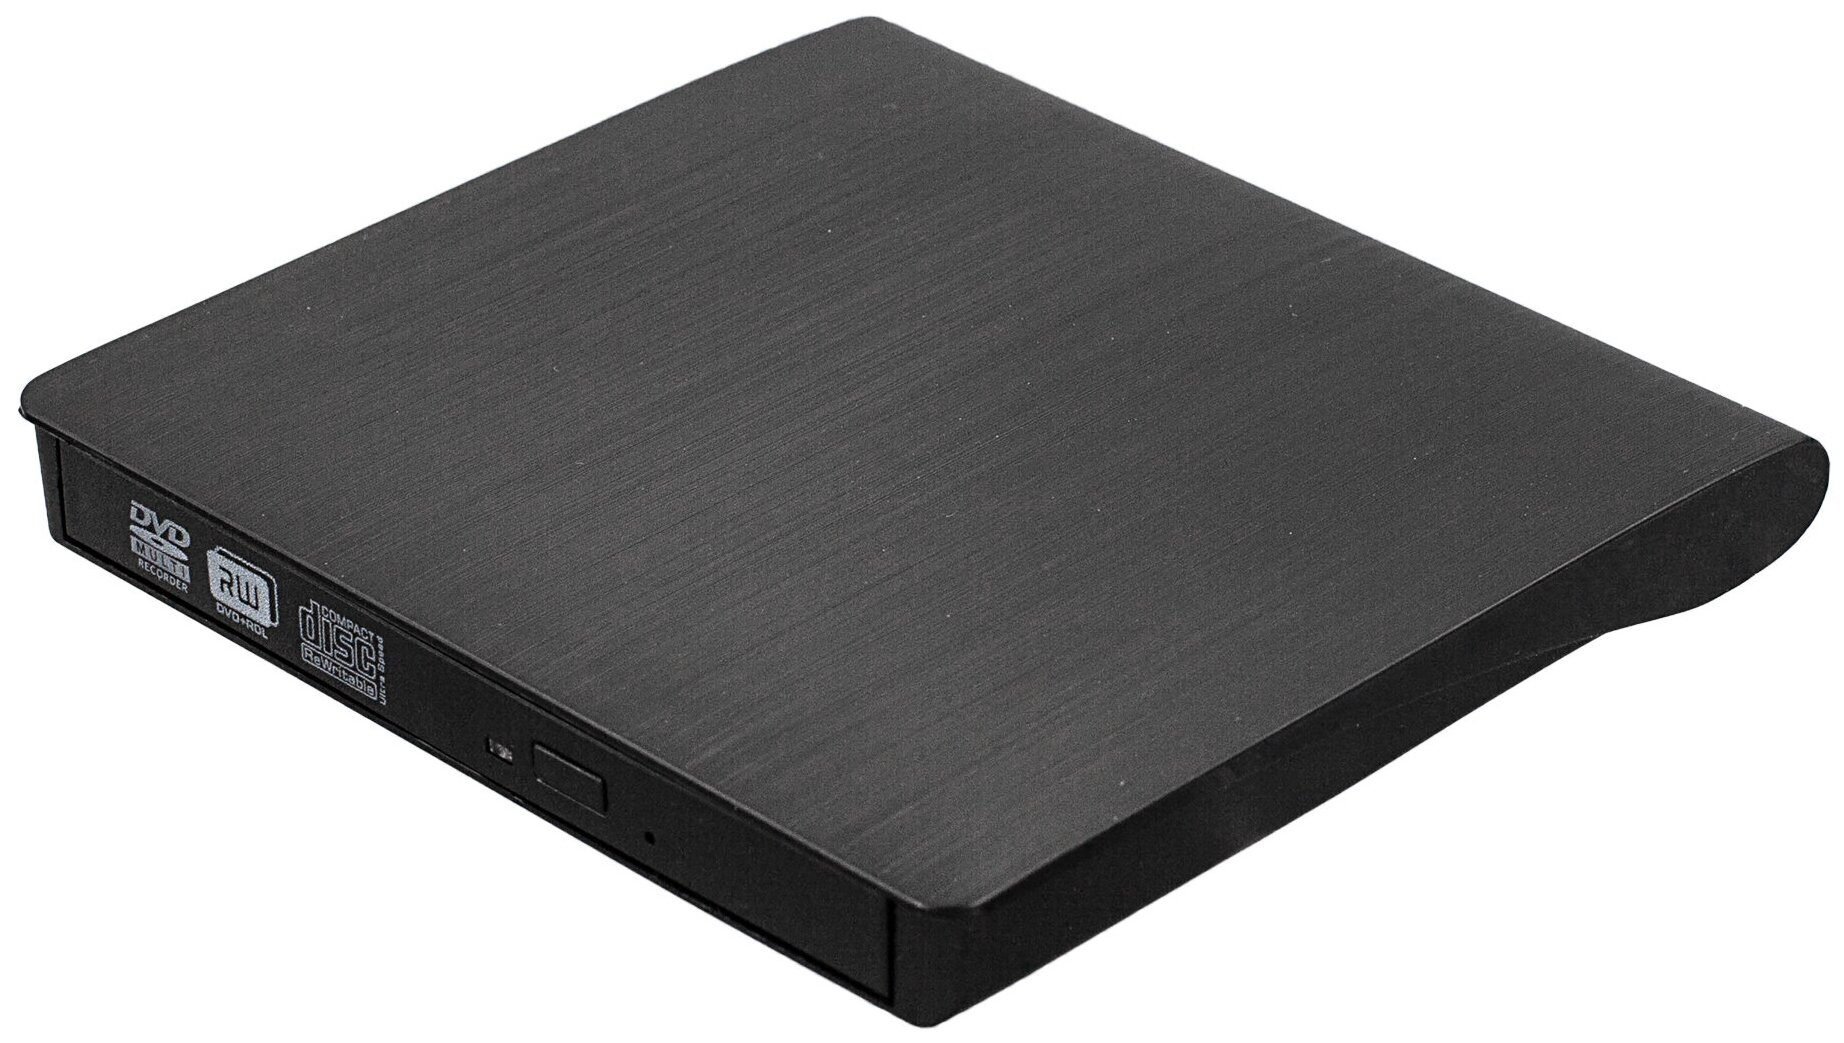 Внешний дисковод DVD - USB изогнутый черный